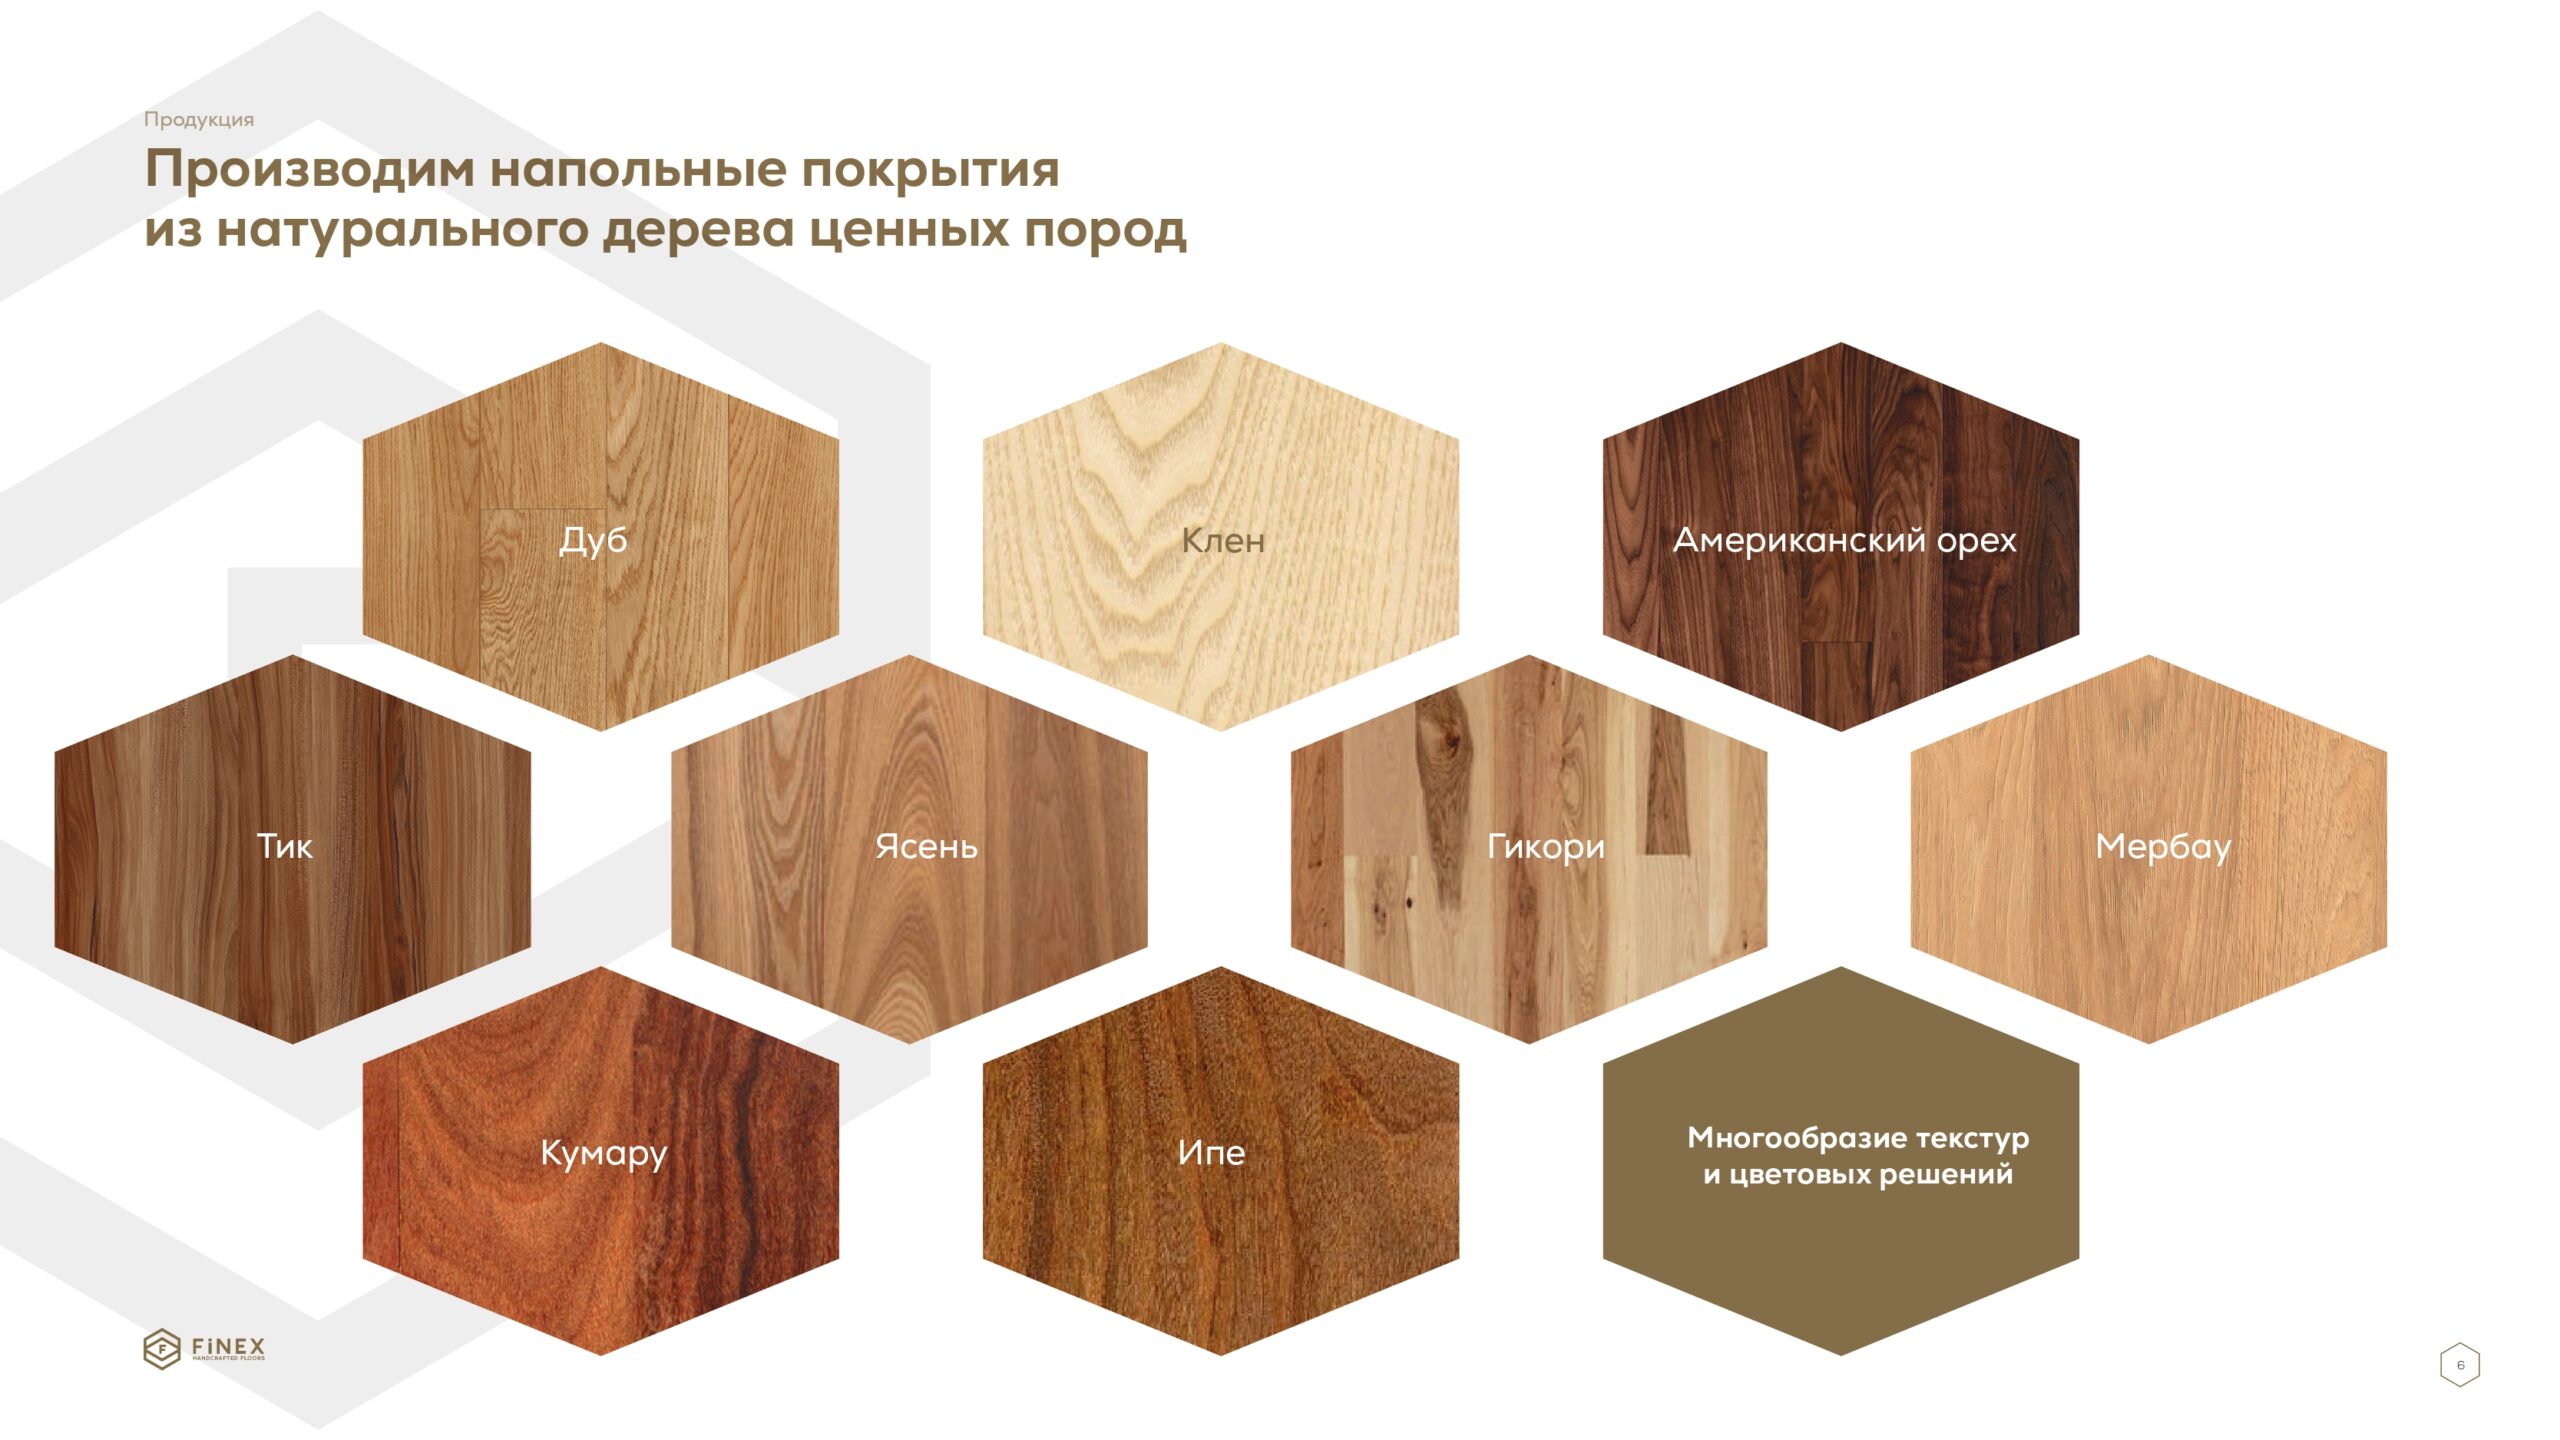 Презентация для производителя напольных покрытий из натурального дерева слайд 3